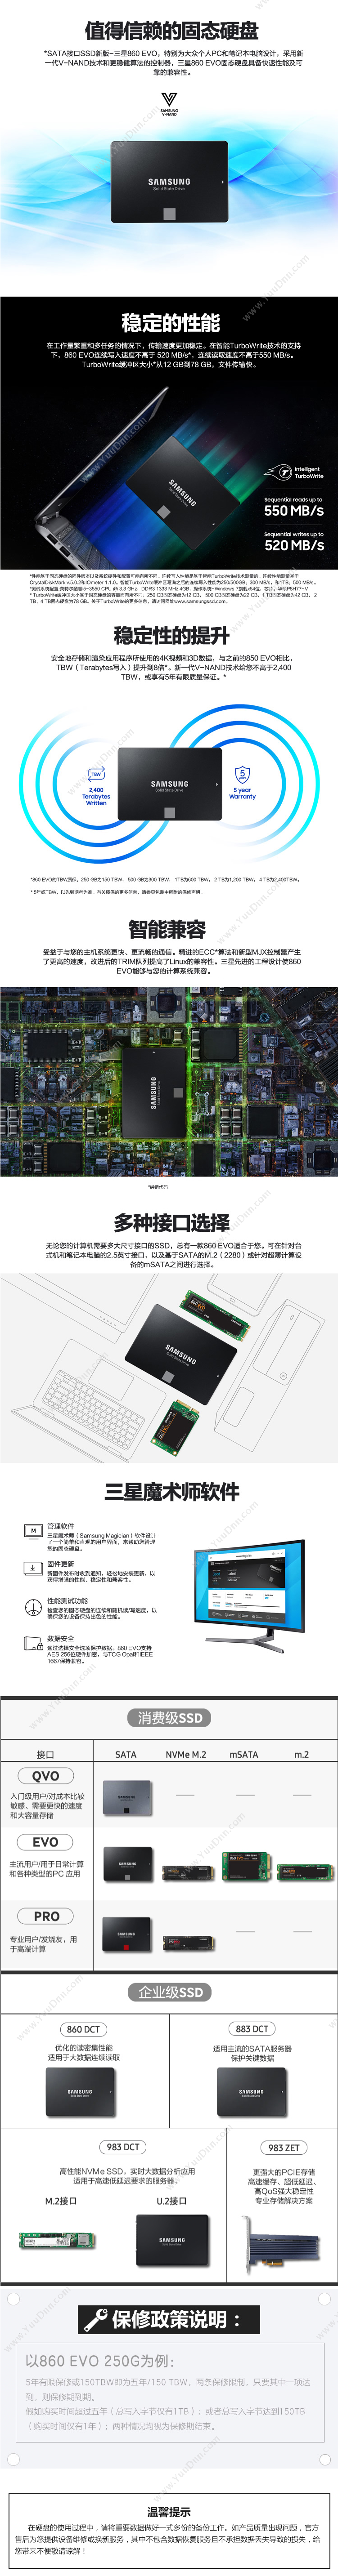 三星 Samsung MZ-76E1T0B/CN SSD SATA3.0接口 860 EVO 1TB（黑） 固态硬盘